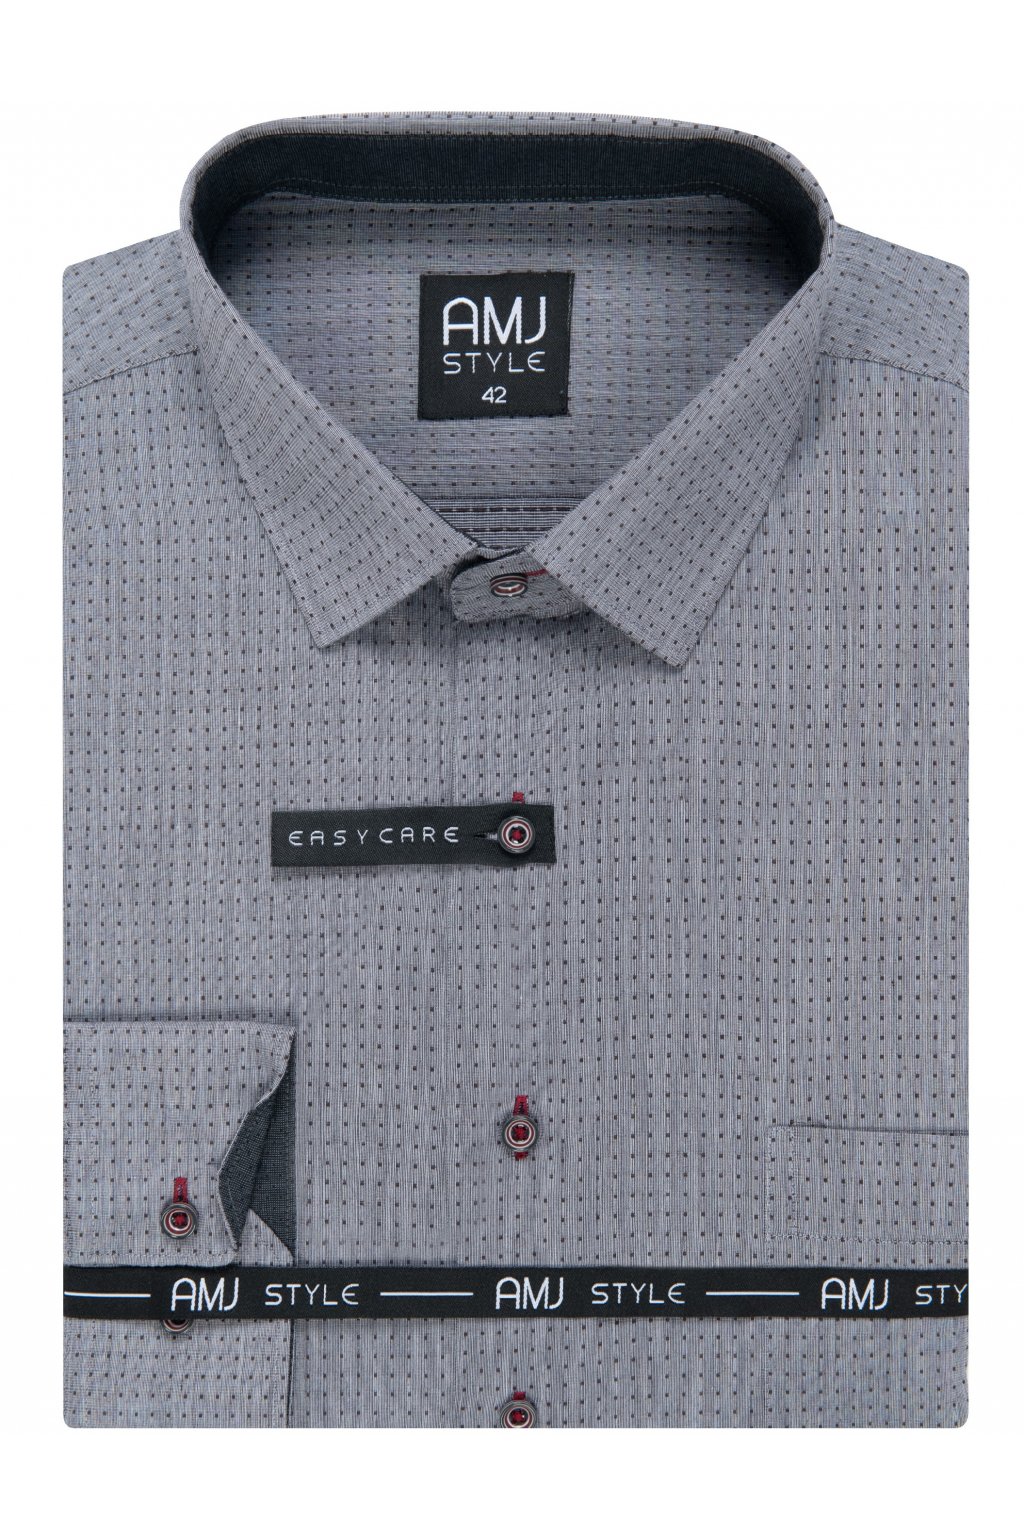 Pánská košile AMJ Comfort fit s tečkami - šedá